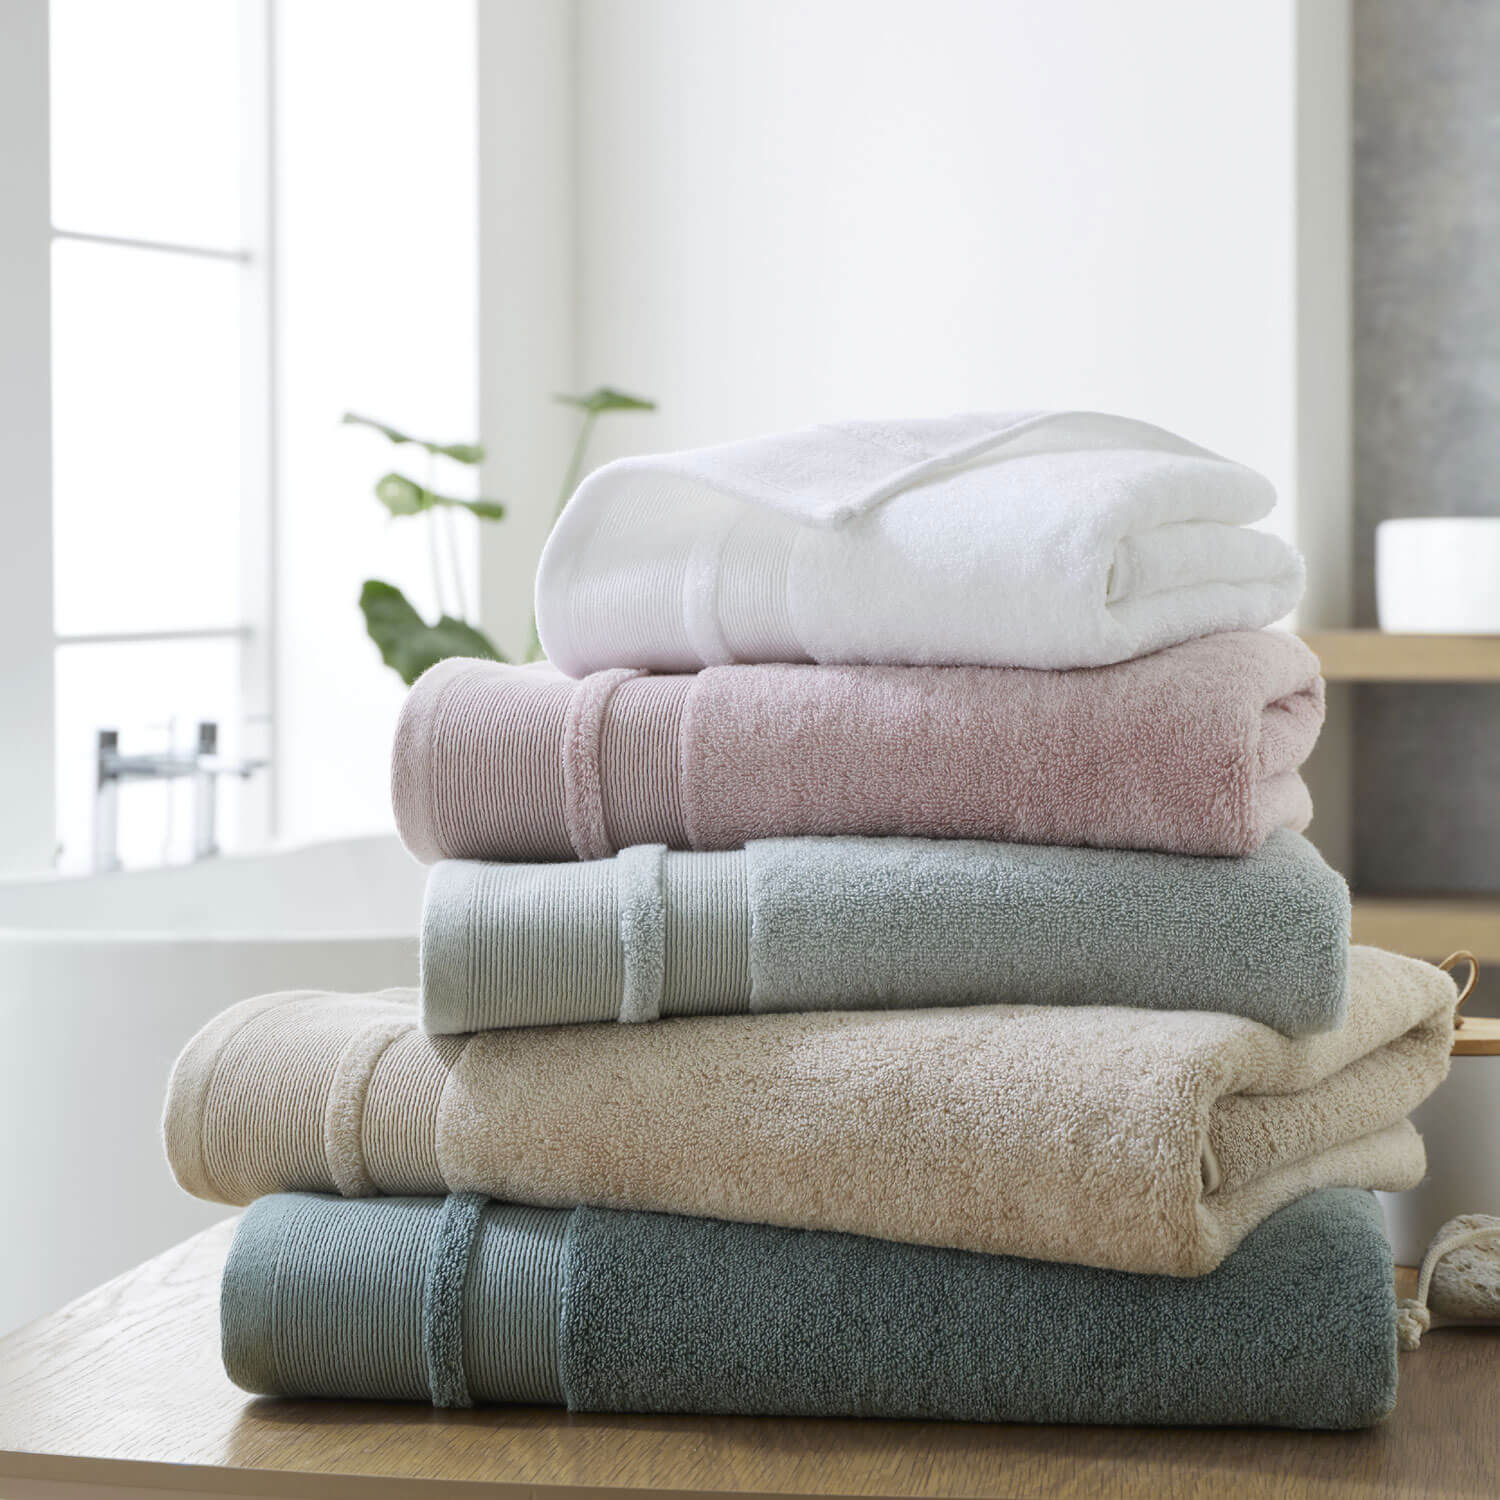 Dorma Zero Twist Cotton Modal Towel - White 2 Shaws Department Stores